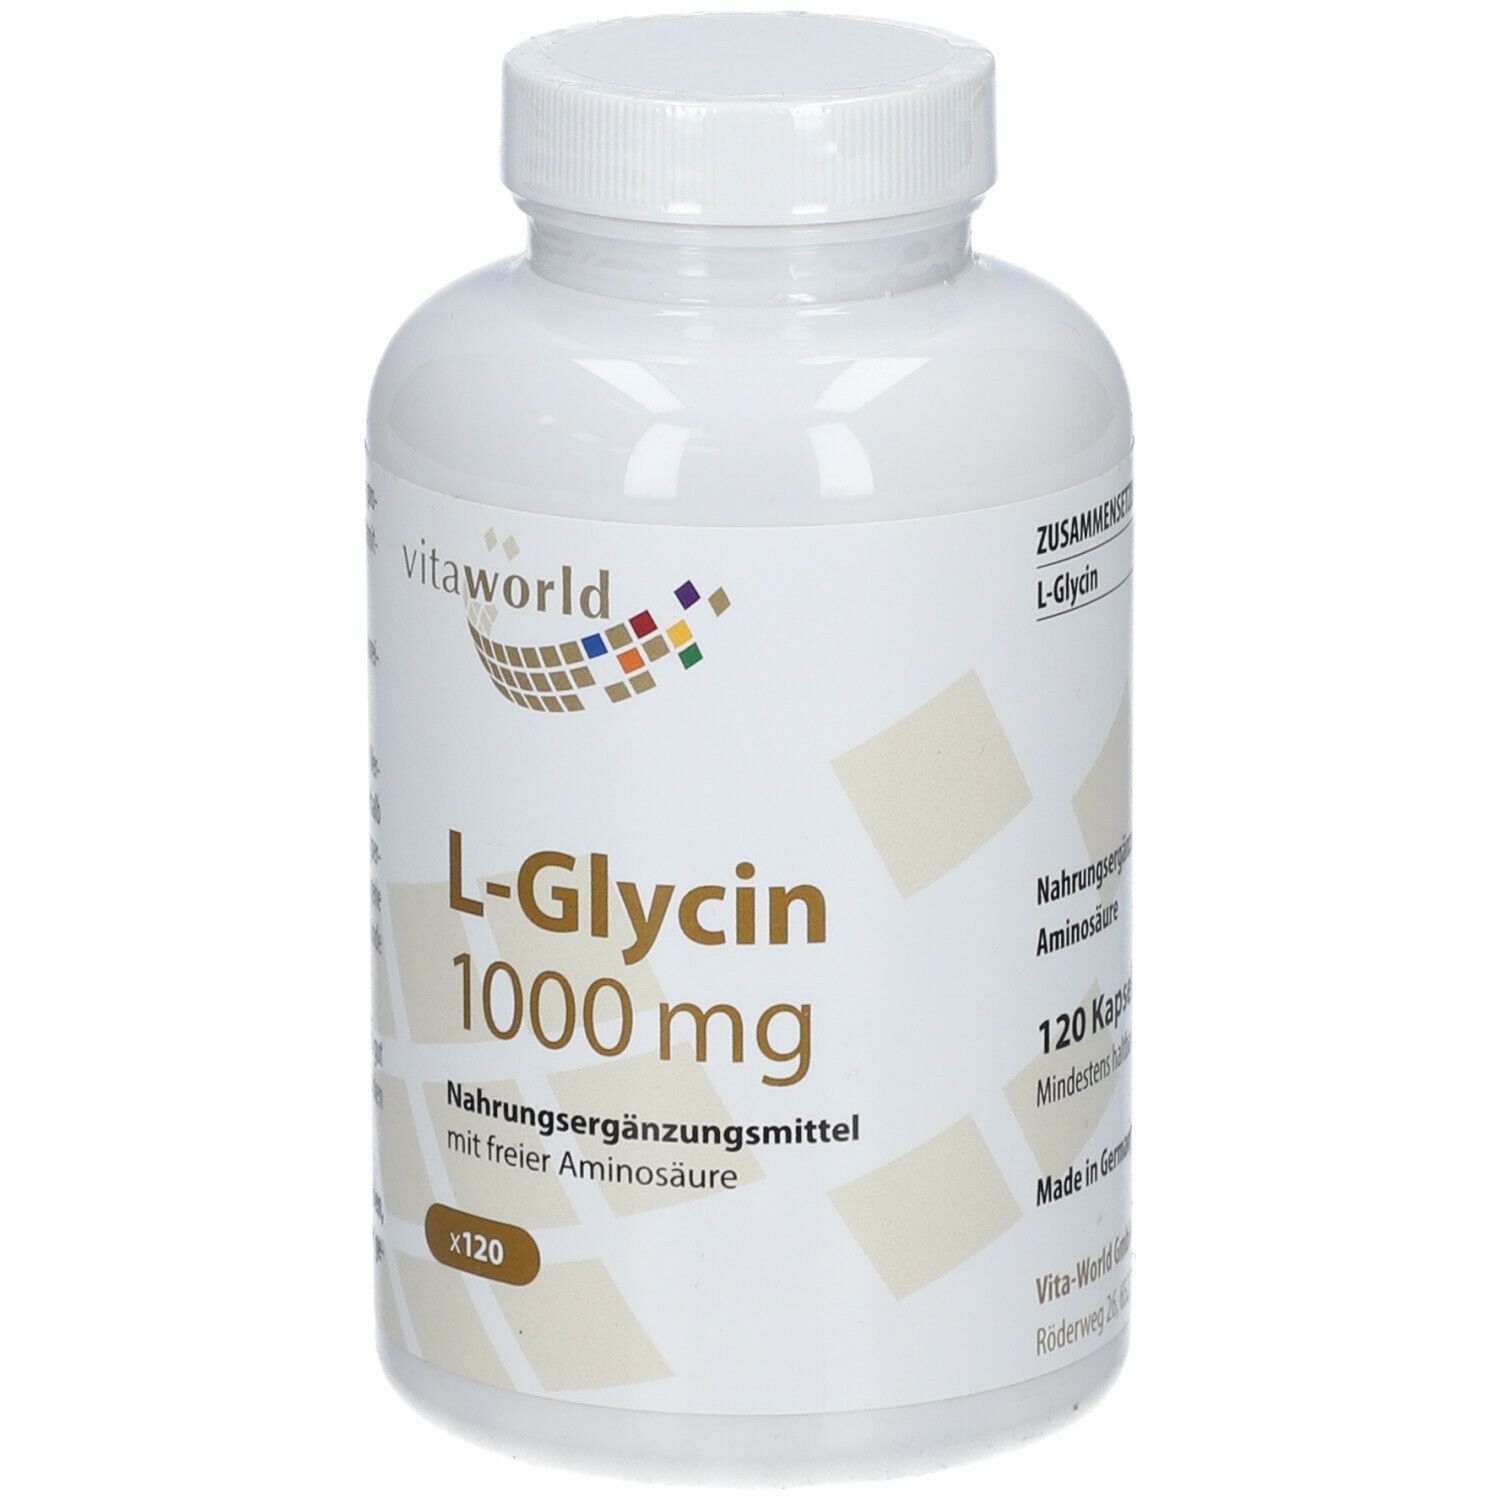 VitaWorld L-Glycin 1000 mg